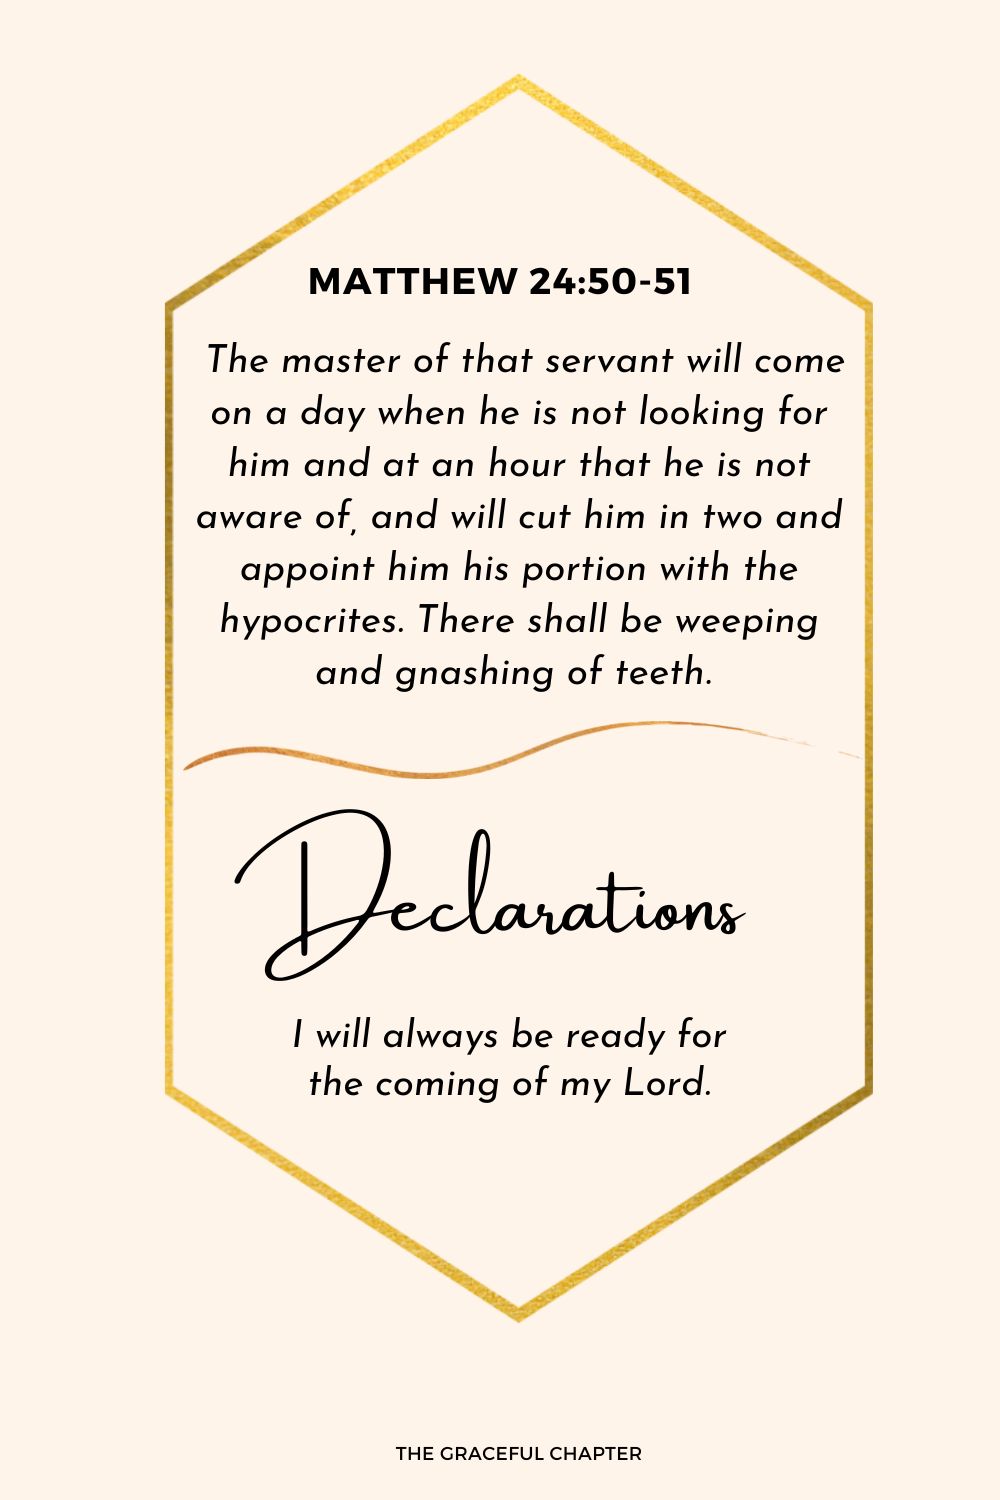 Declaration: Matthew 24:50-51